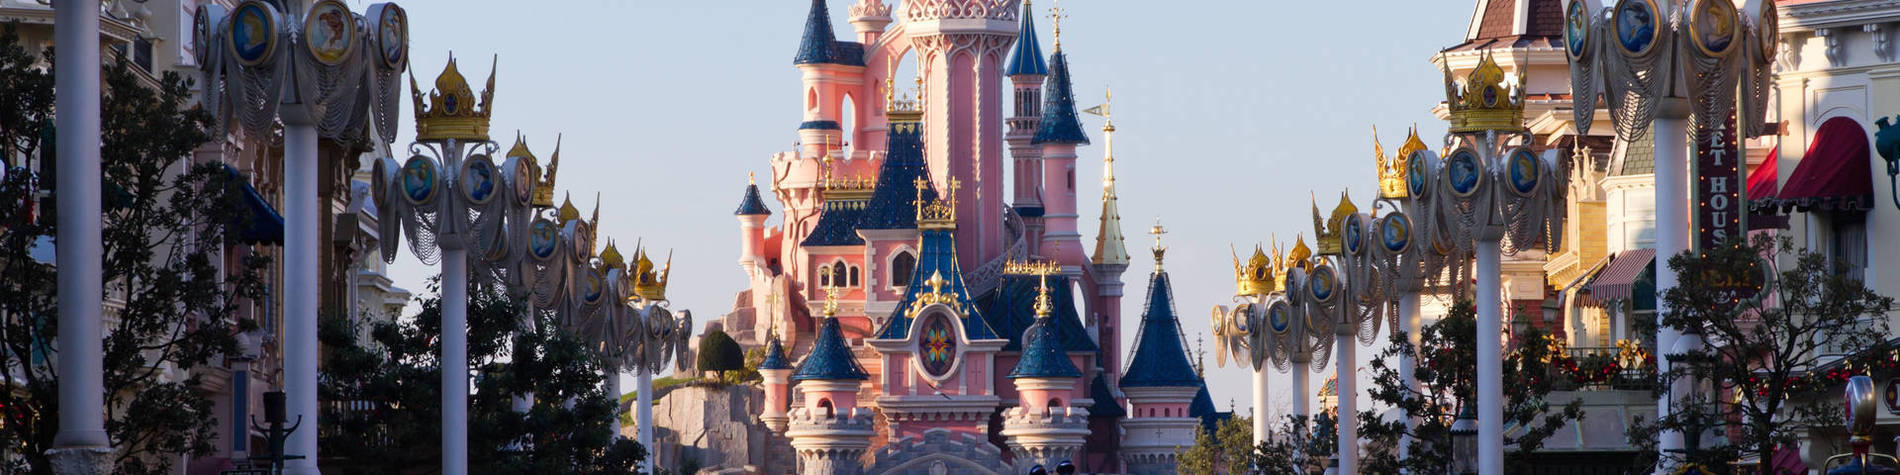 Disneyland : les hôtels ouverts cet été